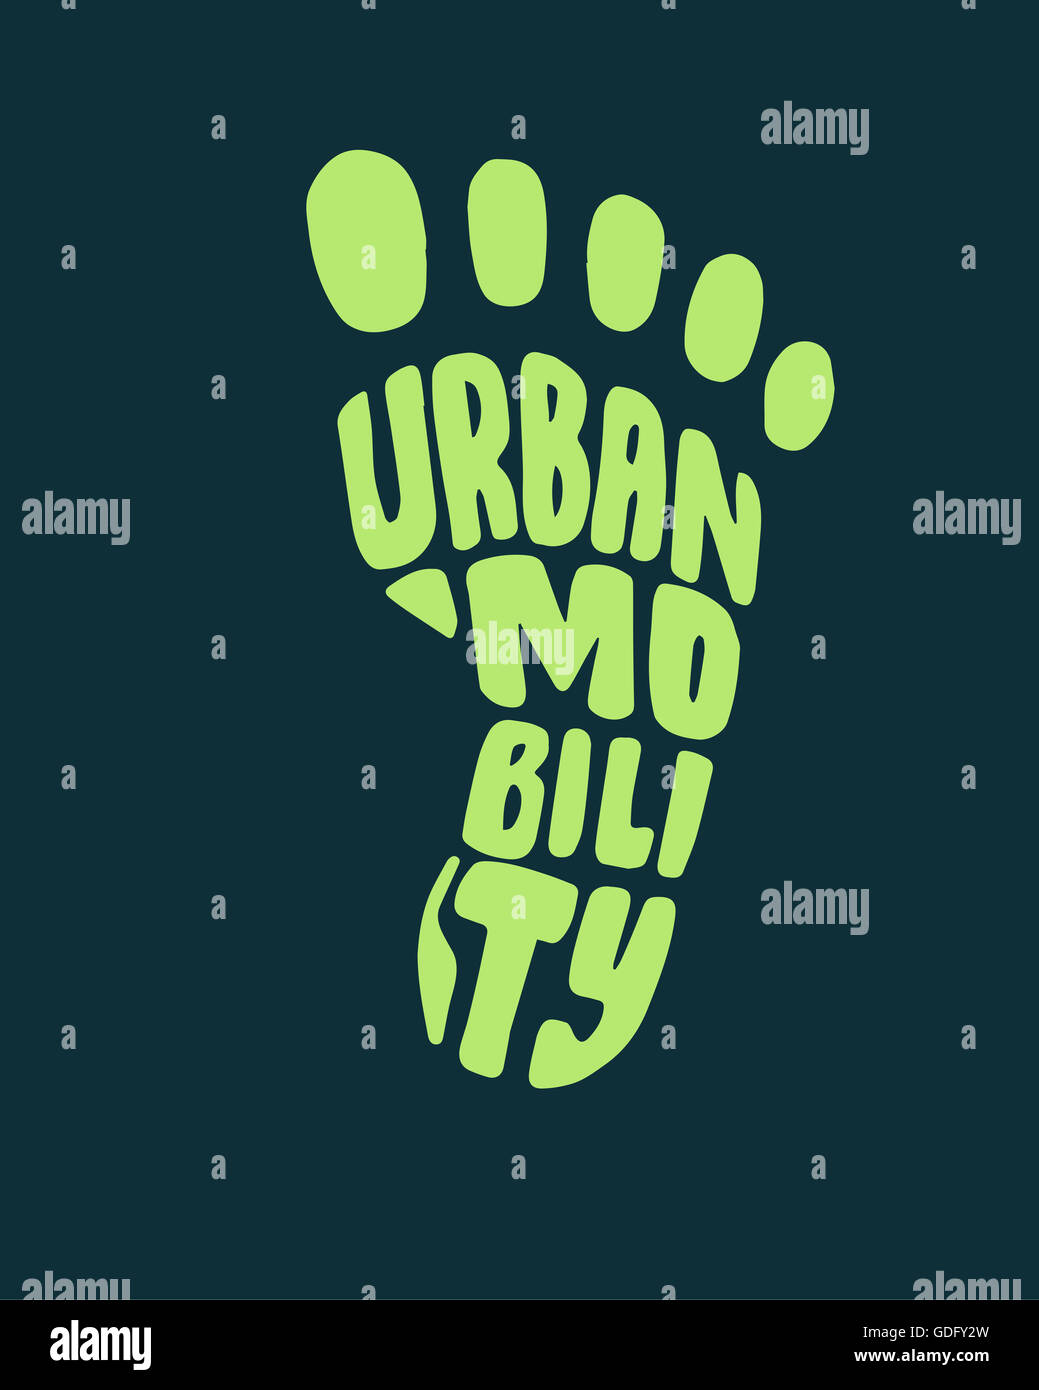 Disegnata a mano immagine o disegno di un piede silhouette con la frase: la mobilità urbana Foto Stock